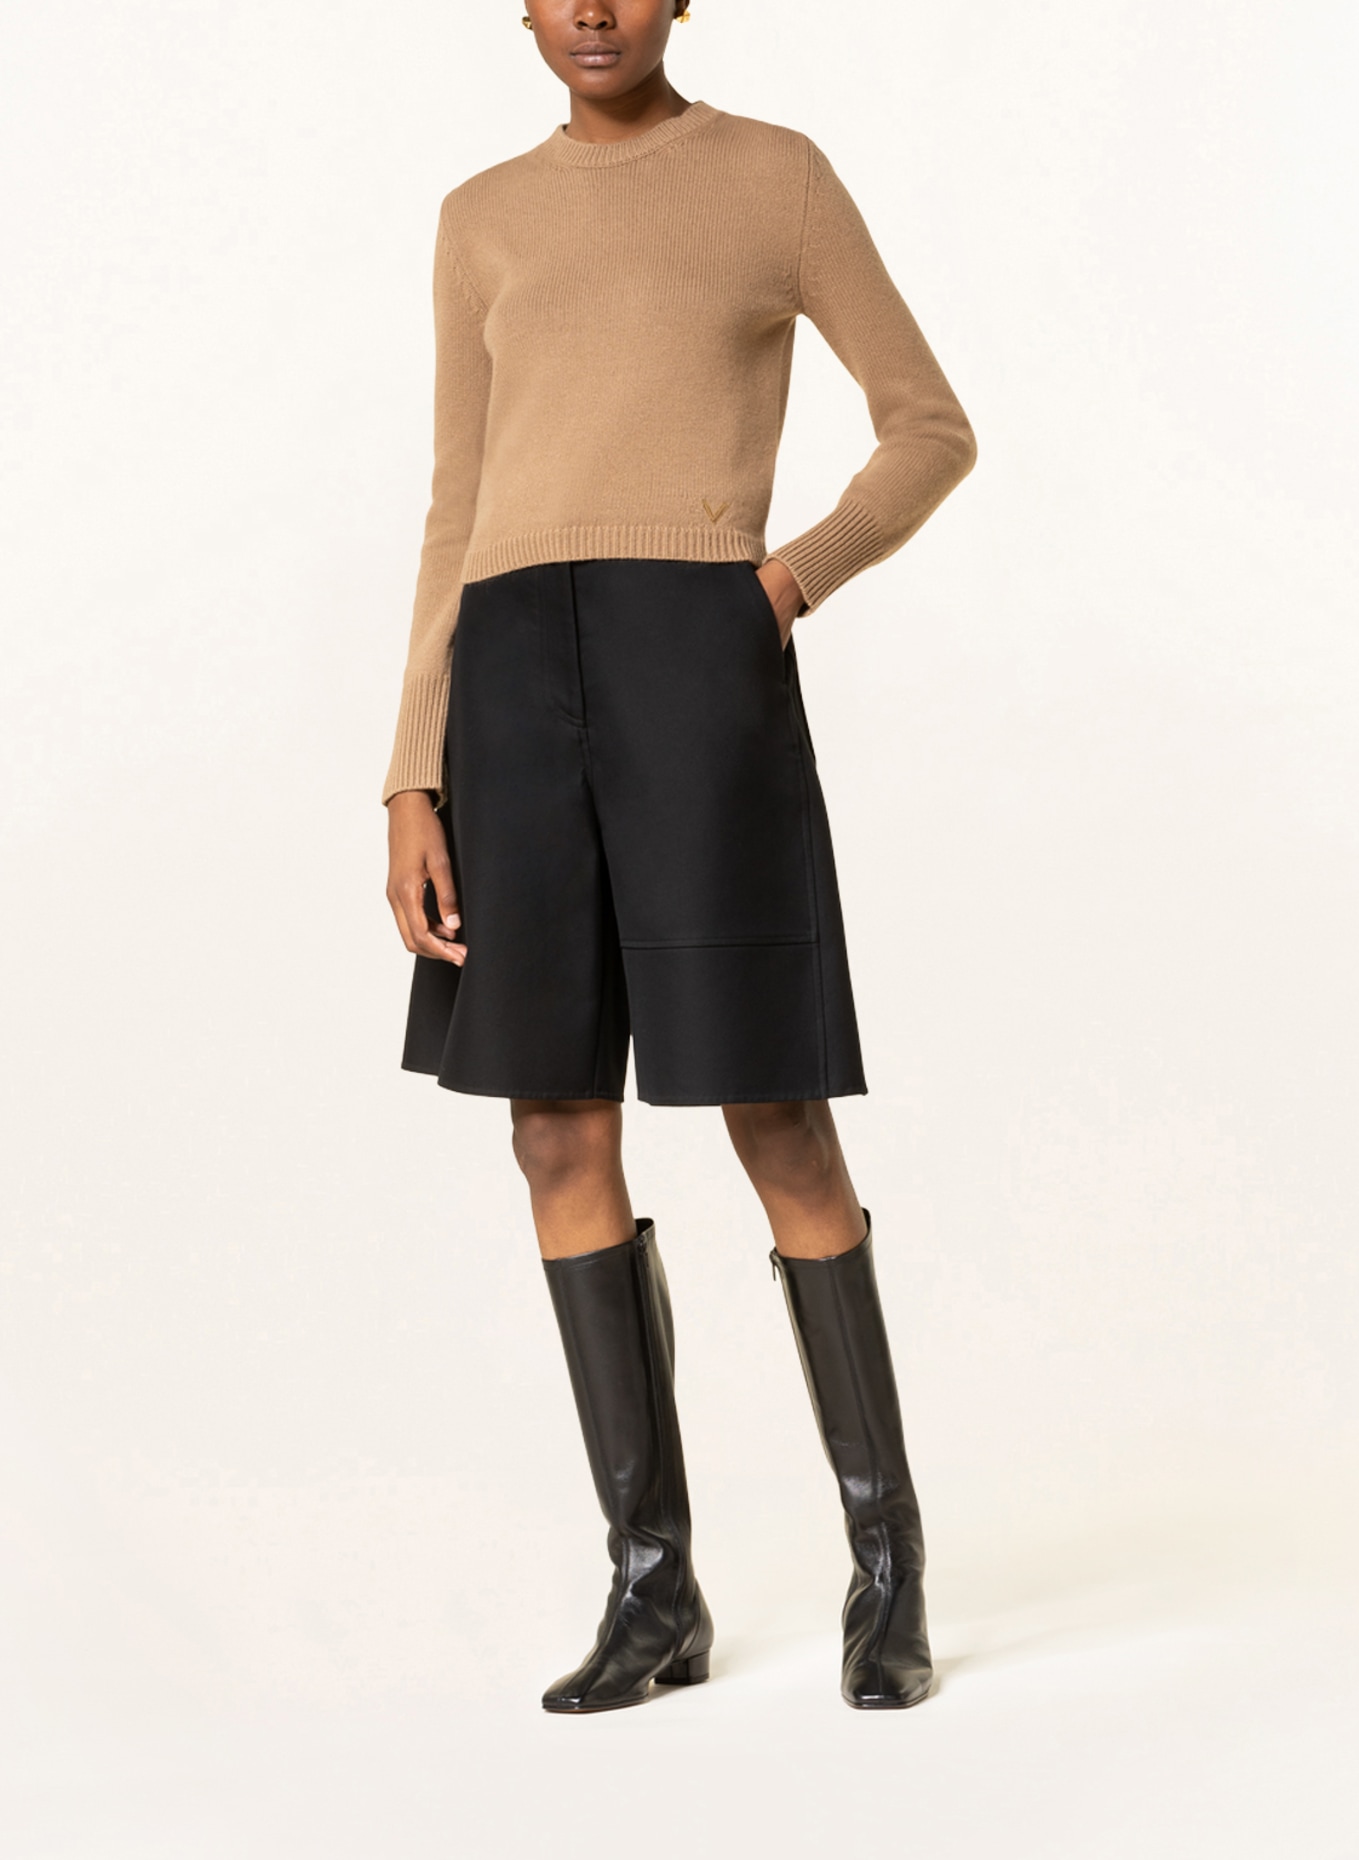 VALENTINO Cashmere-Pullover, Farbe: CAMEL (Bild 2)